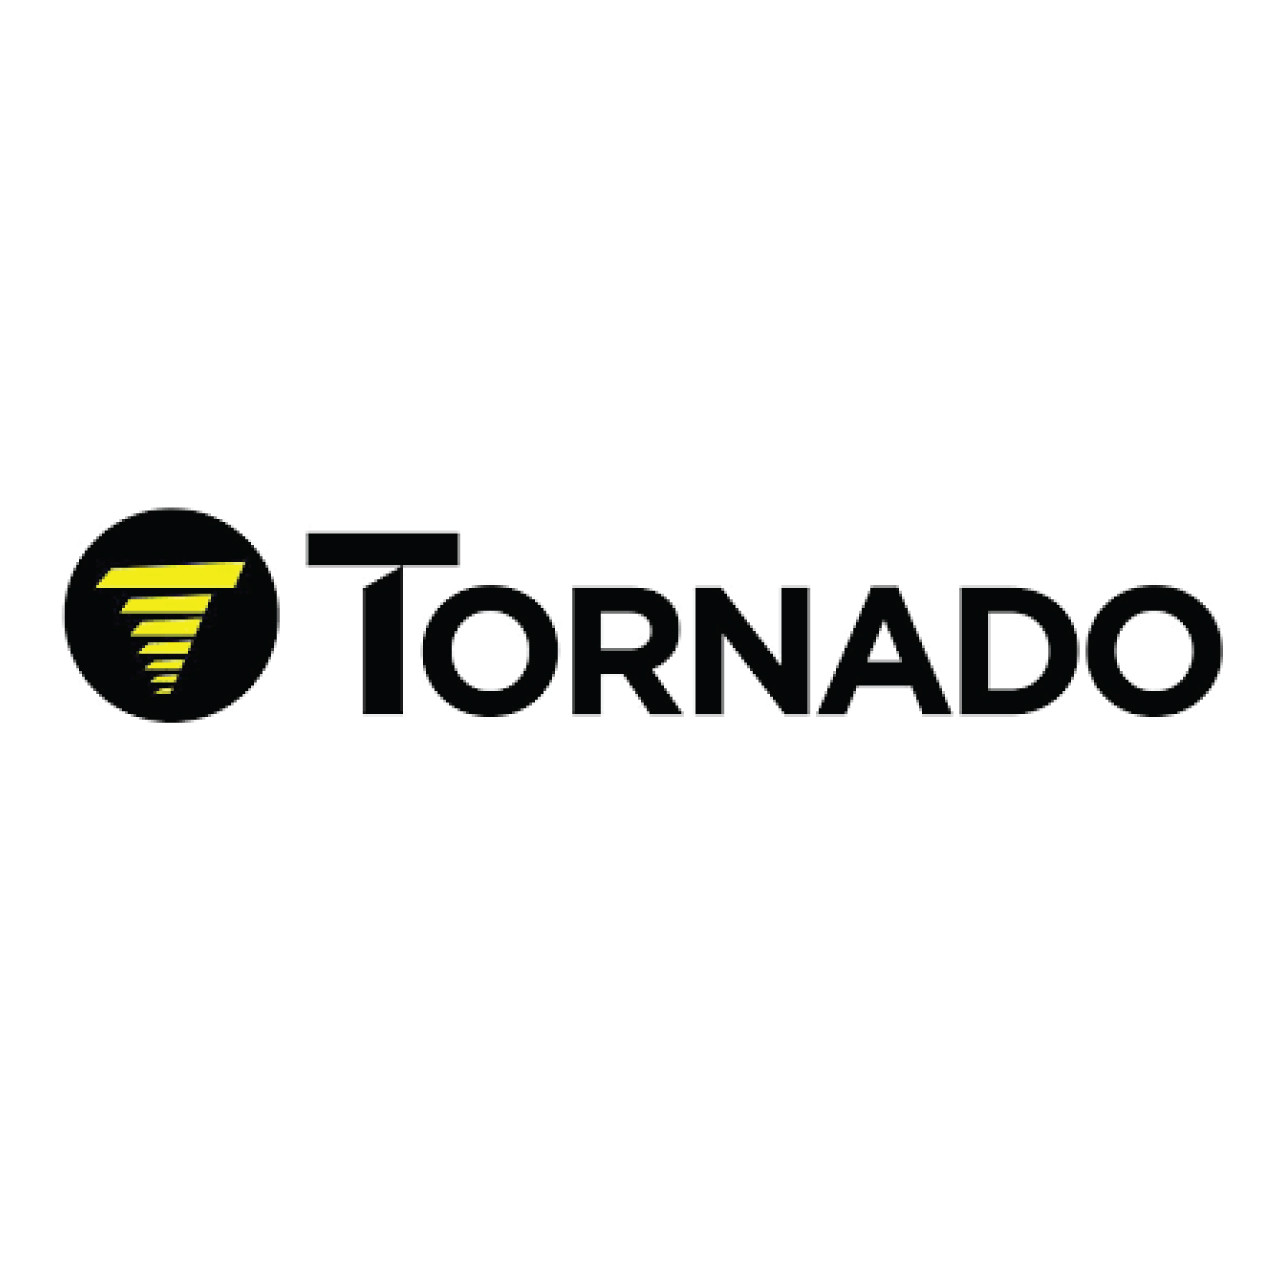 19552, Tornado 19552, Tornado SHROUD BATTERY GLAZER WITH HOLES, Tornado parts